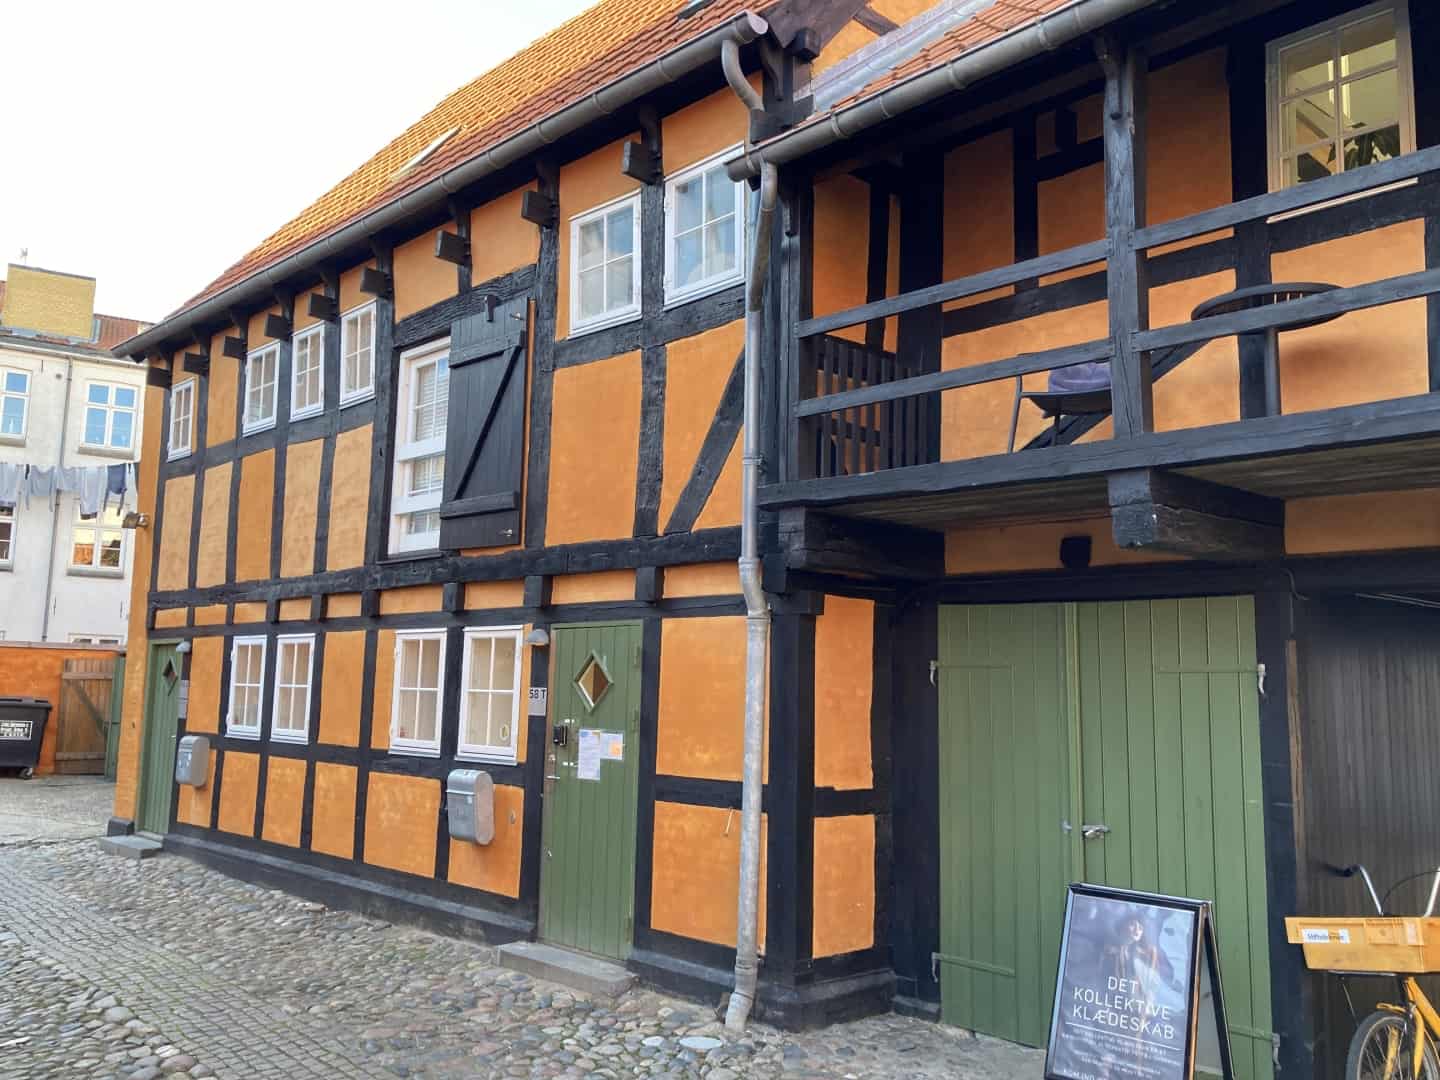 Godt nok Aarhus i konstant forandring, og gamle huse rives - men rummer stadig masser af bindingsværk og idyl | hsfo.dk